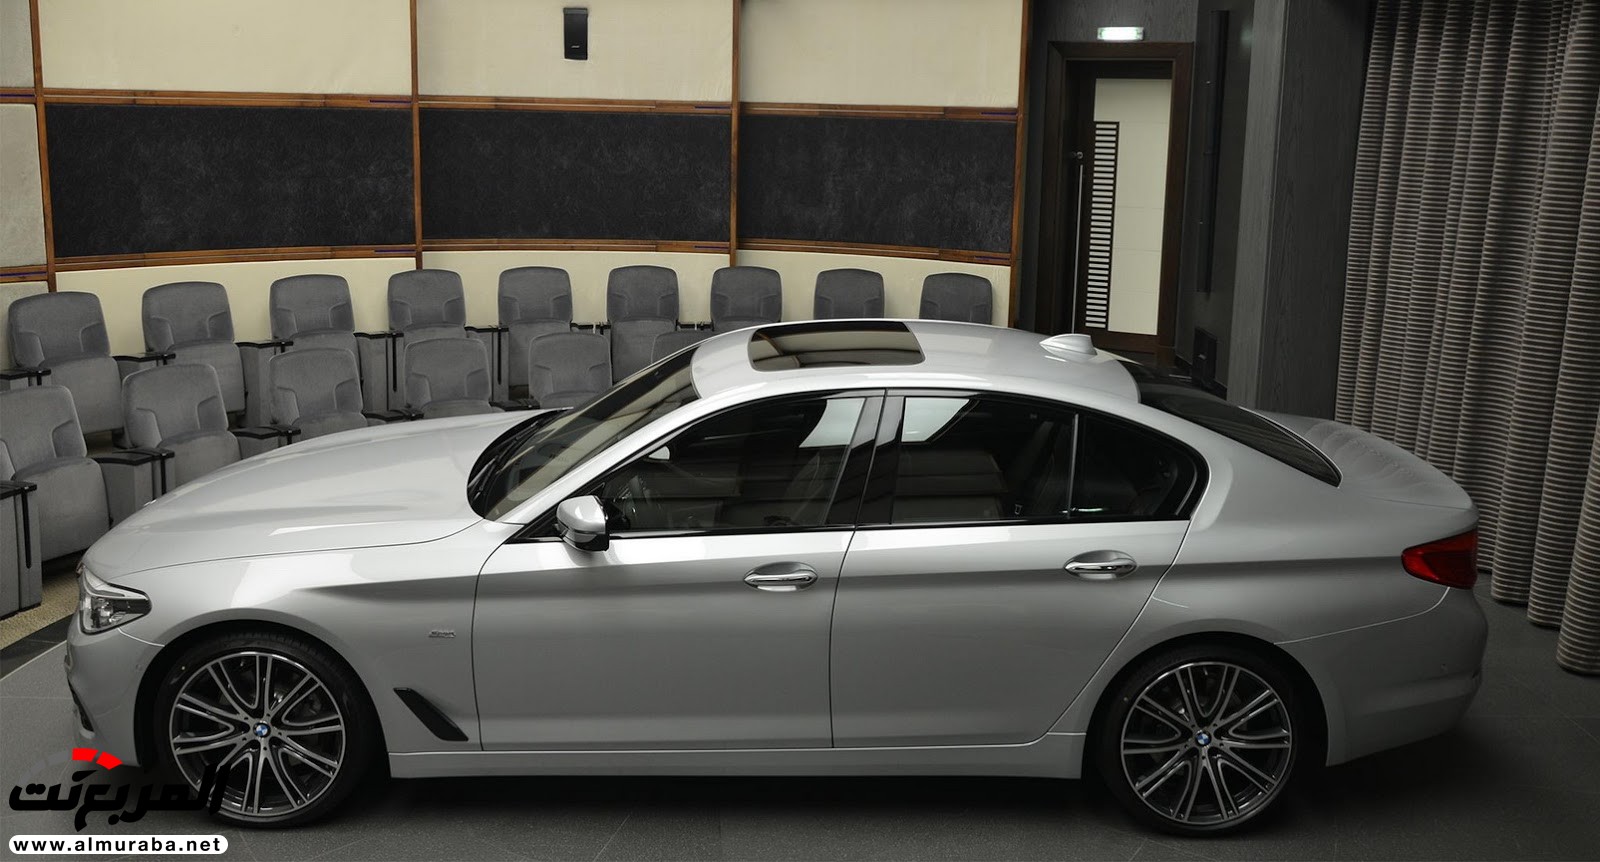 "بي إم دبليو" 540i الجديدة كلياً بتعديلات سبورت لاين معروضة بأبو ظبي BMW 72